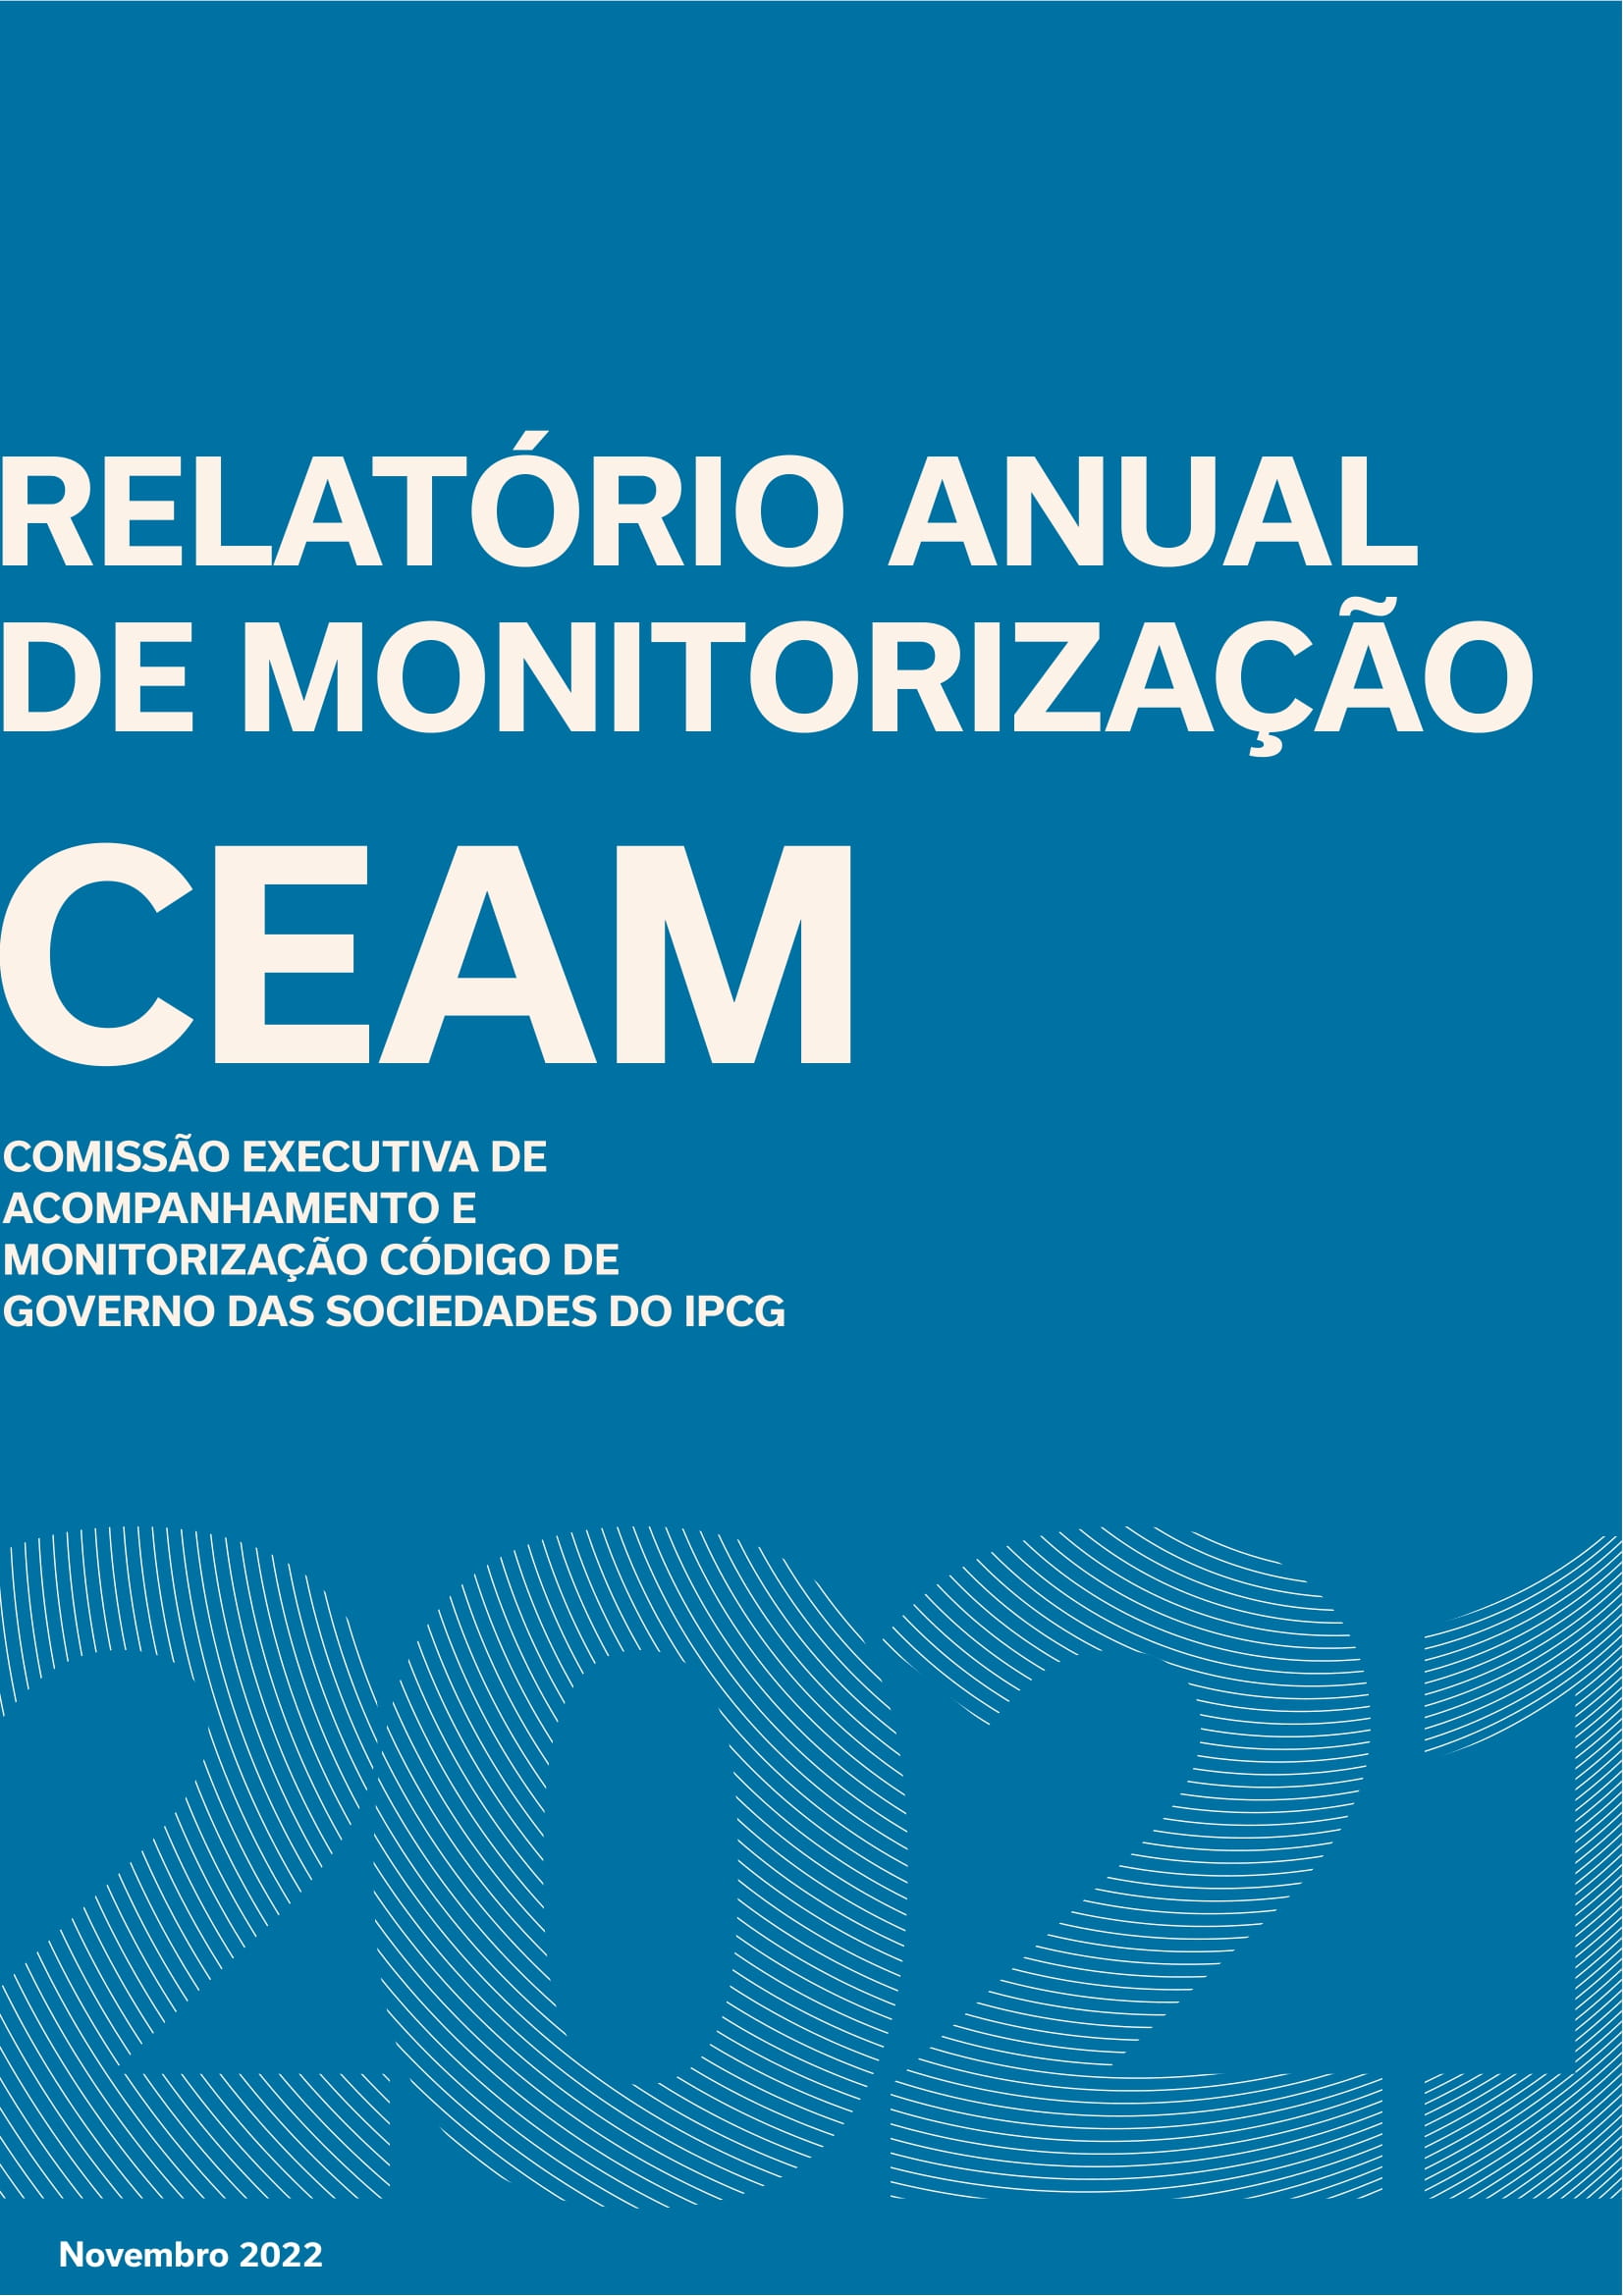 Relatório Anual de Monitorização relativo ao exercício de 2021